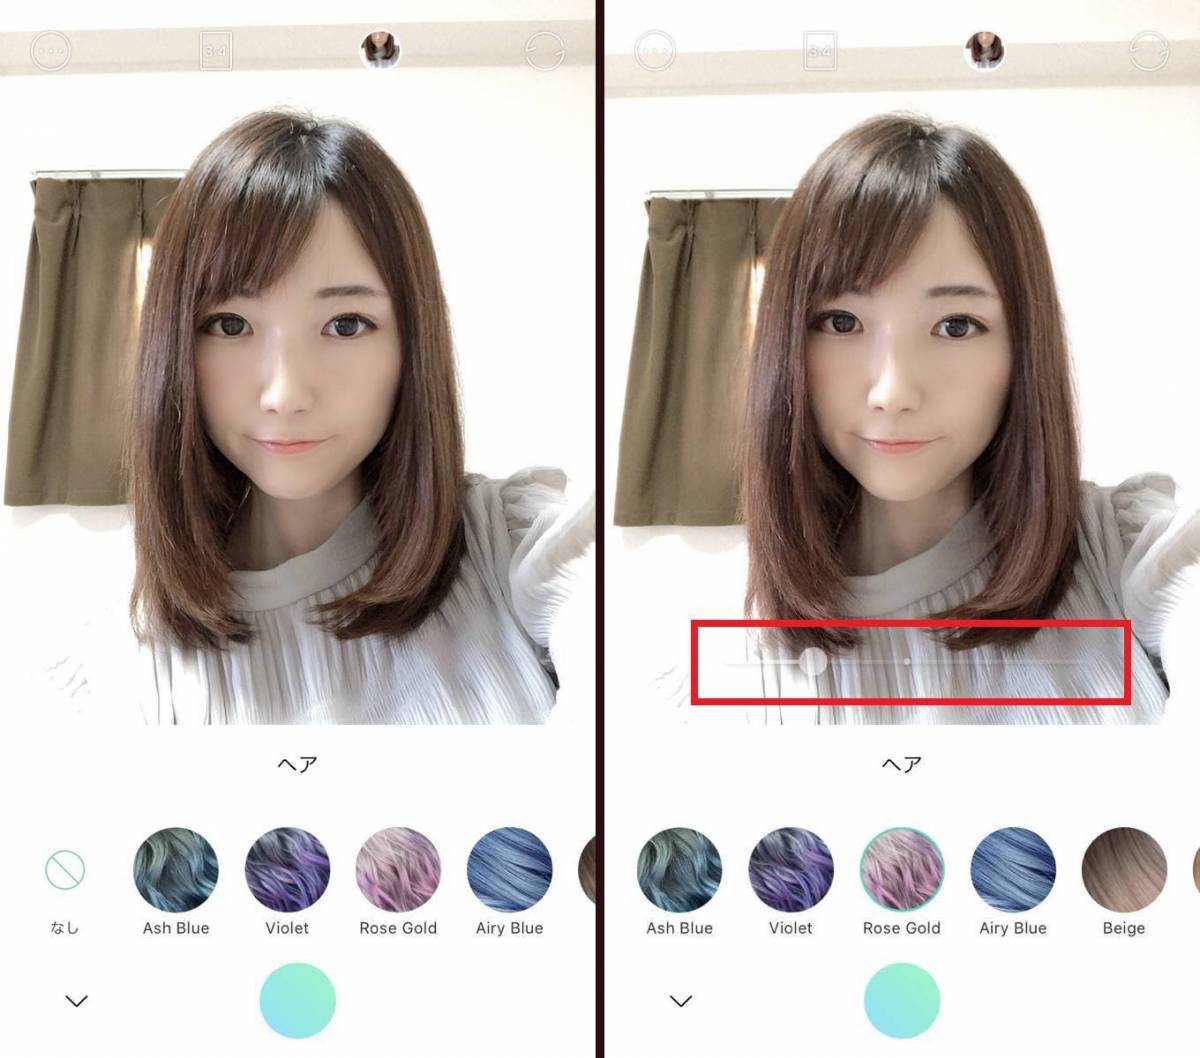 髪色を変えるヘアカラーアプリ比較 セルフカラーを試す前に似合う色を発見 Appliv Topics